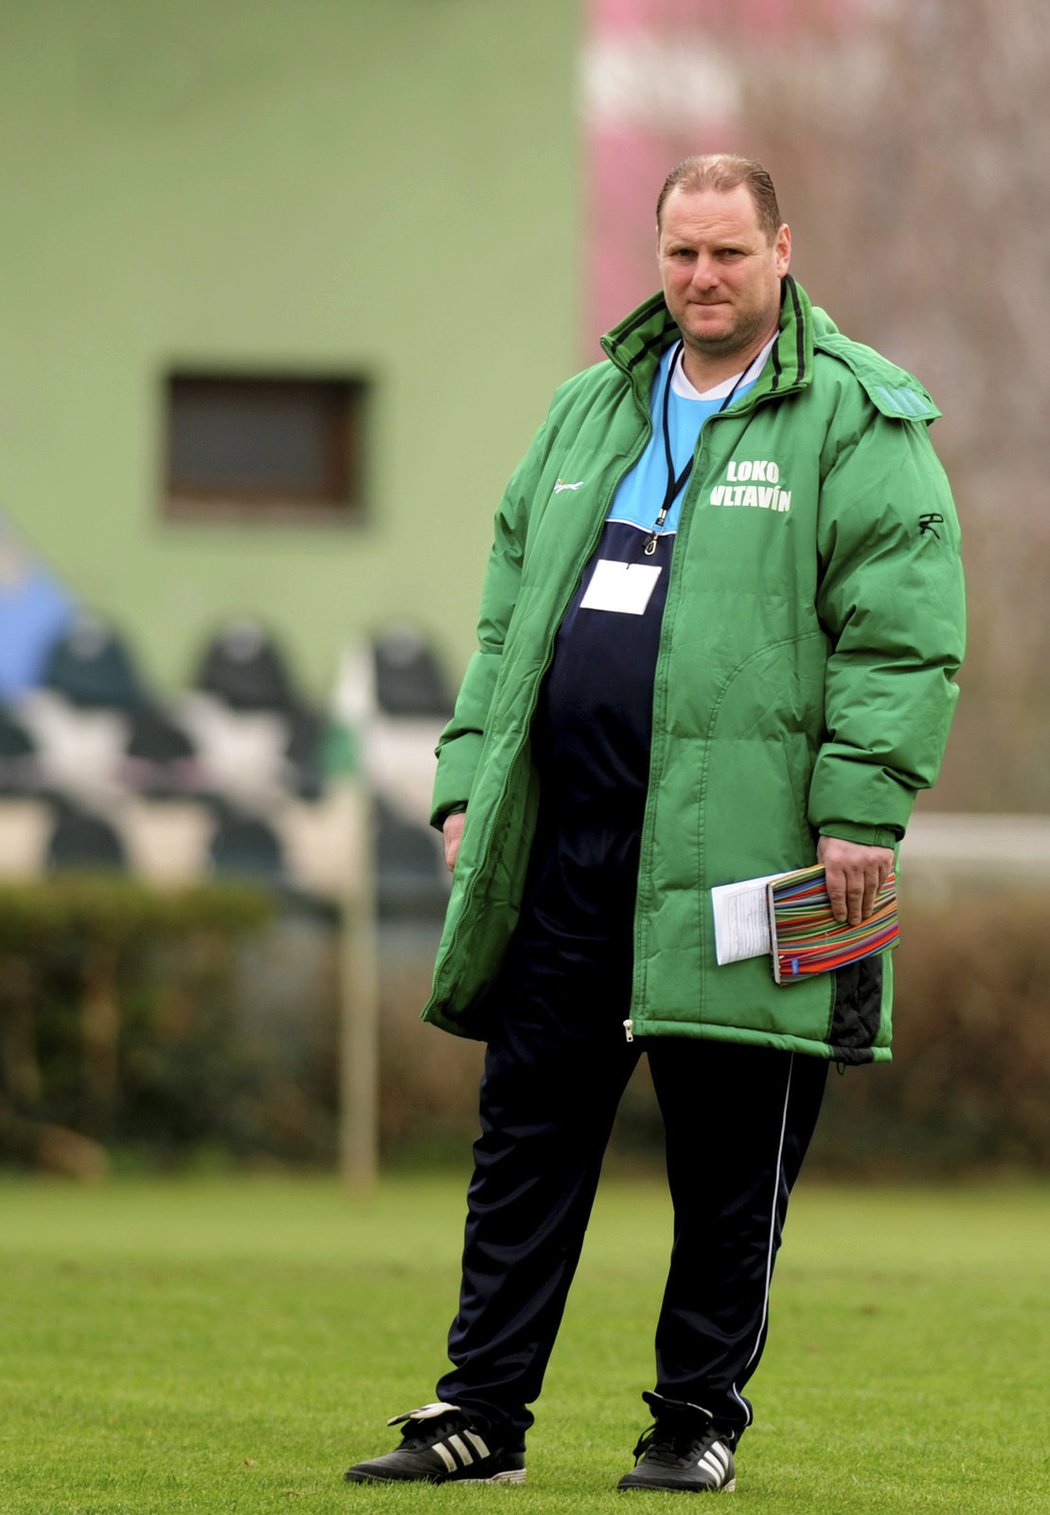 Trenér Radek Kronďák působil v Loko Vltavín šestnáct let, v létě se ale s klubem rozešel a hledá novou výzvu.